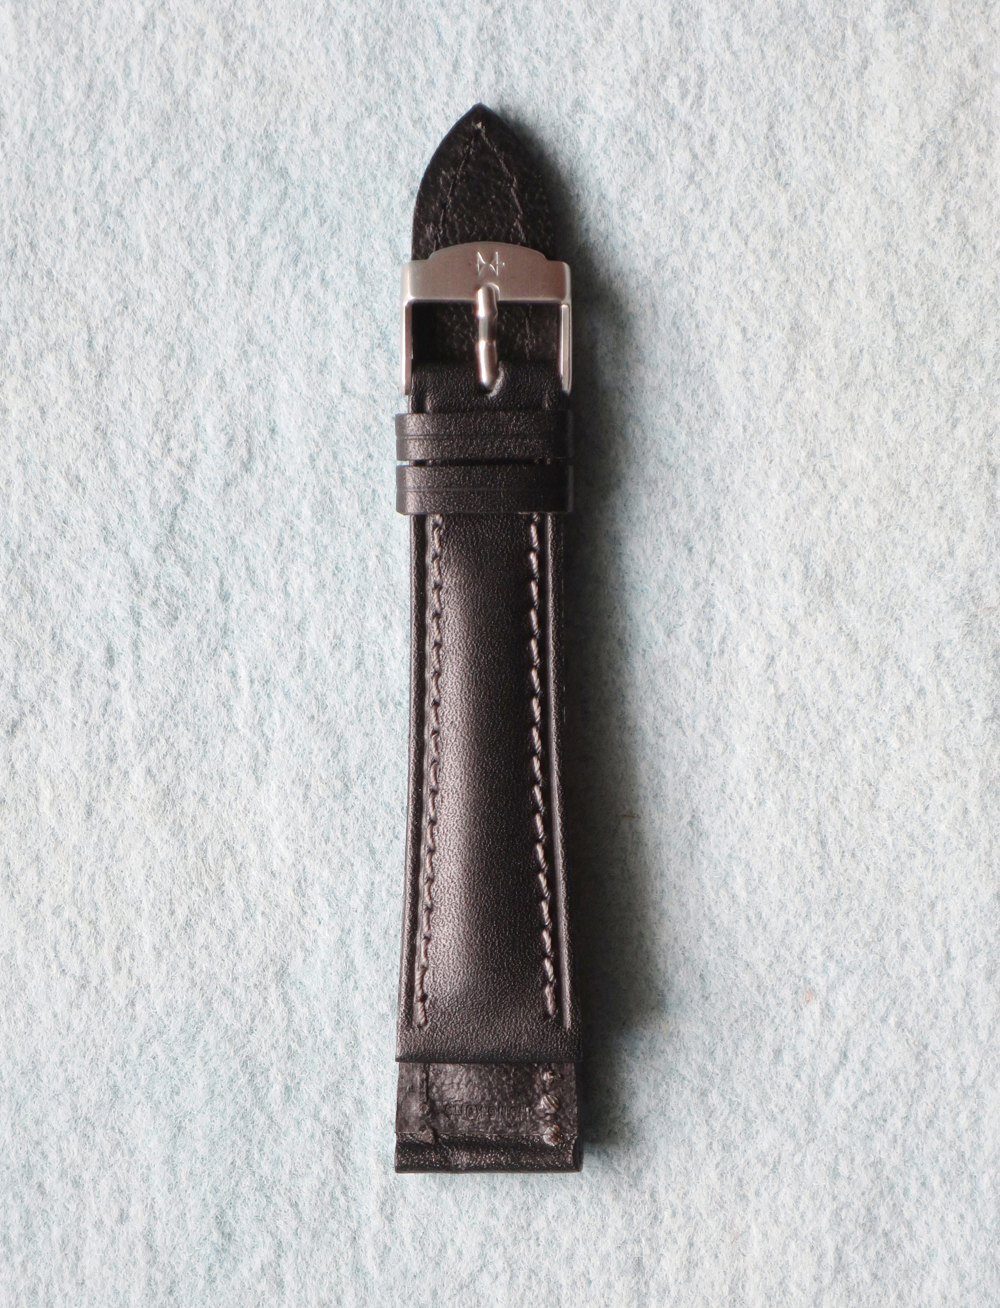 Uhrenband, Original Hamilton Uhrenlederarmband, schwarz, 20mm, Genuine Hamilton Leather Bracelet